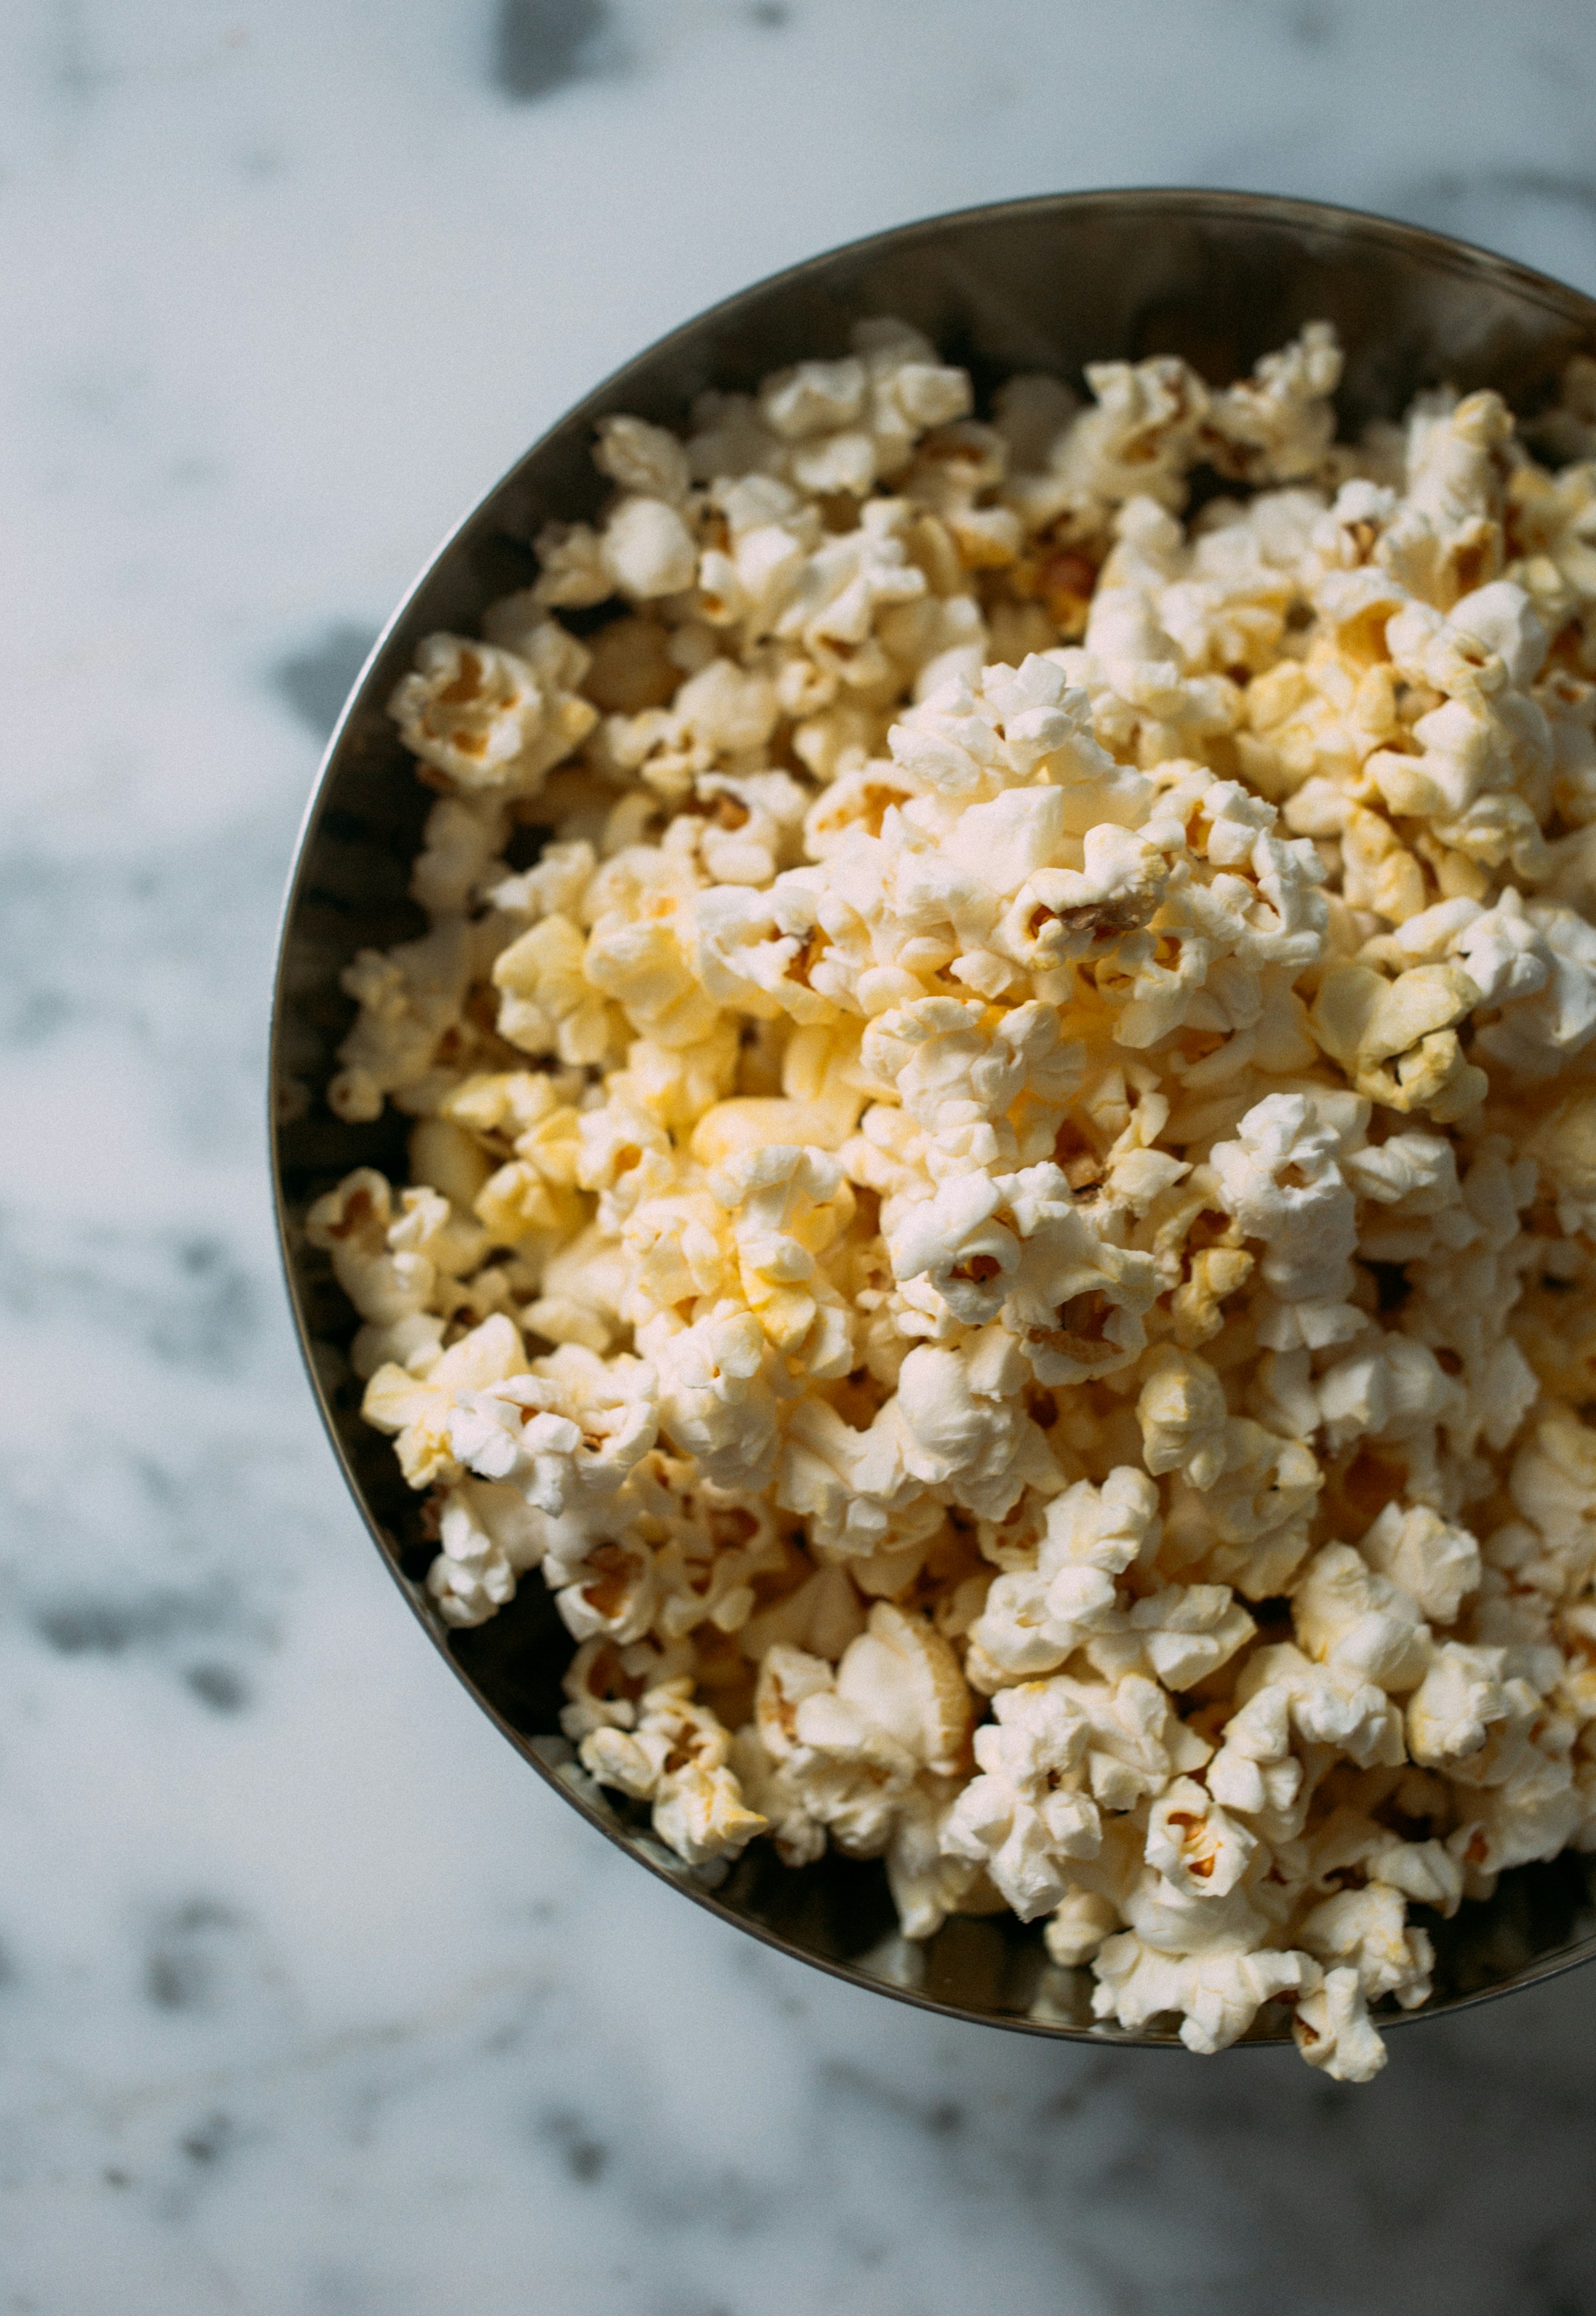 Eine Schale mit Popcorn | Quelle: Unsplash